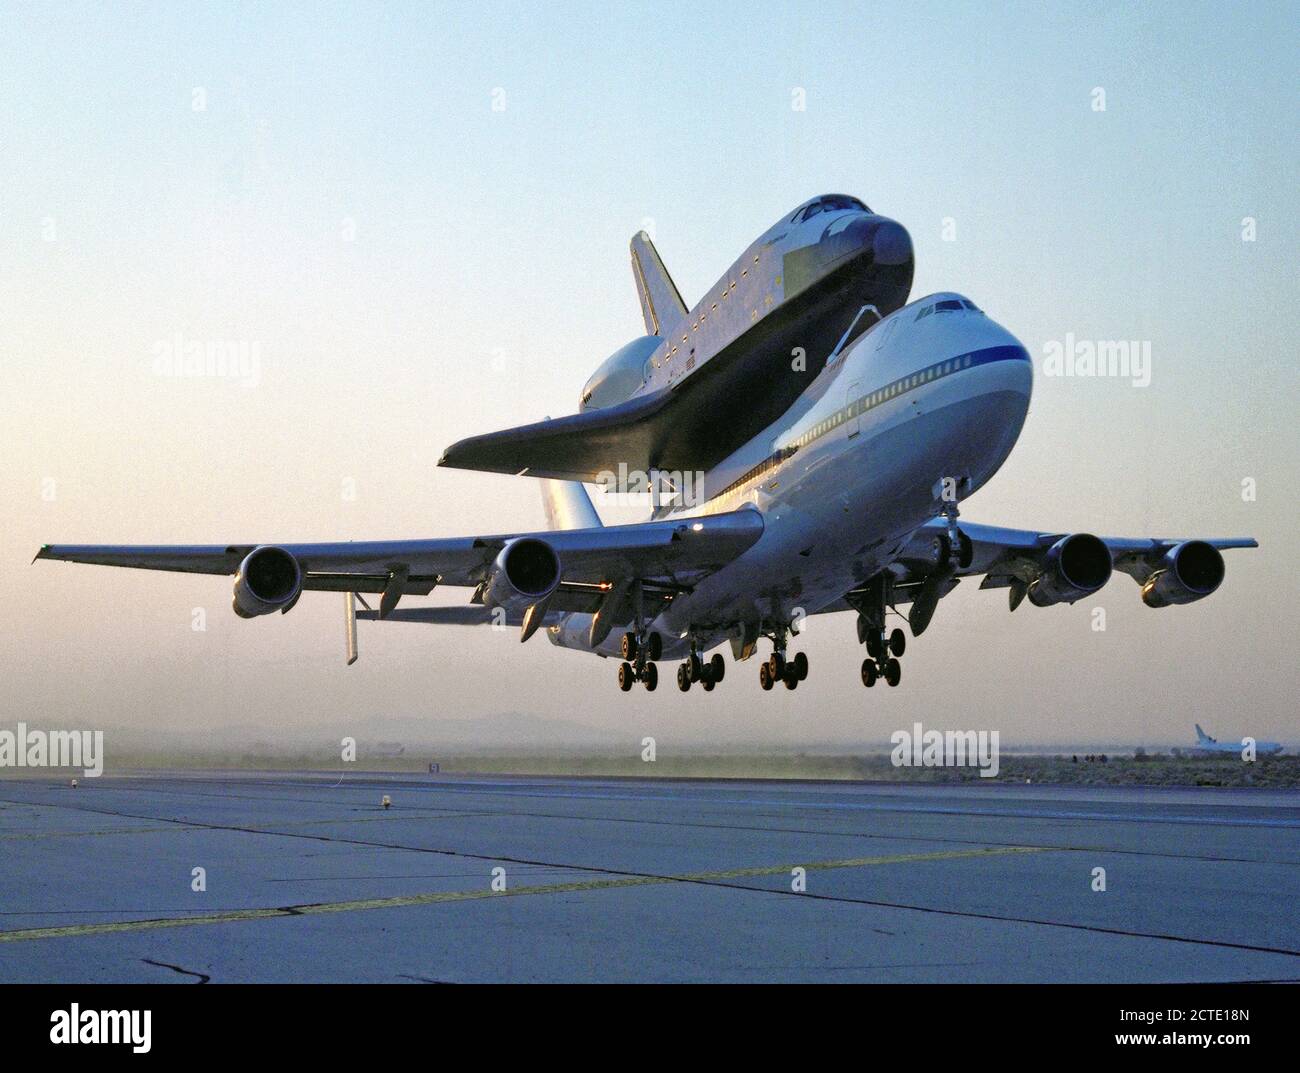 NASA 747 vettore navetta velivolo n. 911, con lo space shuttle orbiter Endeavour saldamente montato sopra la sua fusoliera, inizia il volo traghetto da Rockwell della pianta 42 a Palmdale, in California Foto Stock